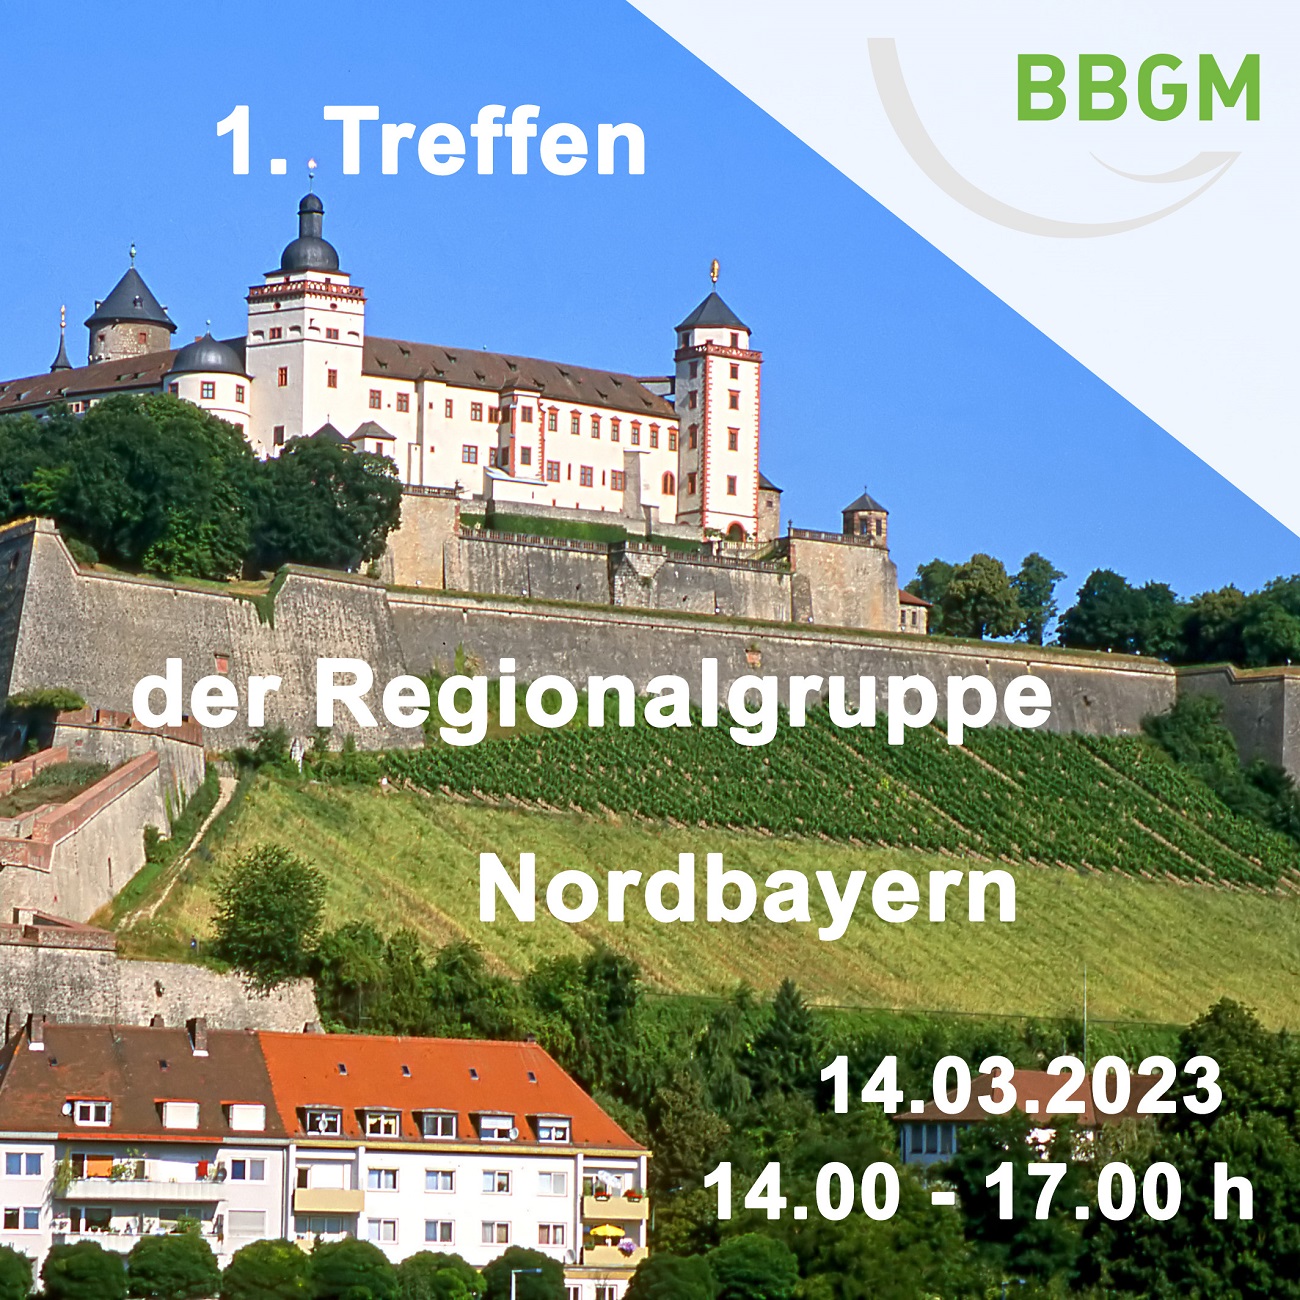 1. Treffen der Regionalgruppe Nordbayern am 14.03.2023